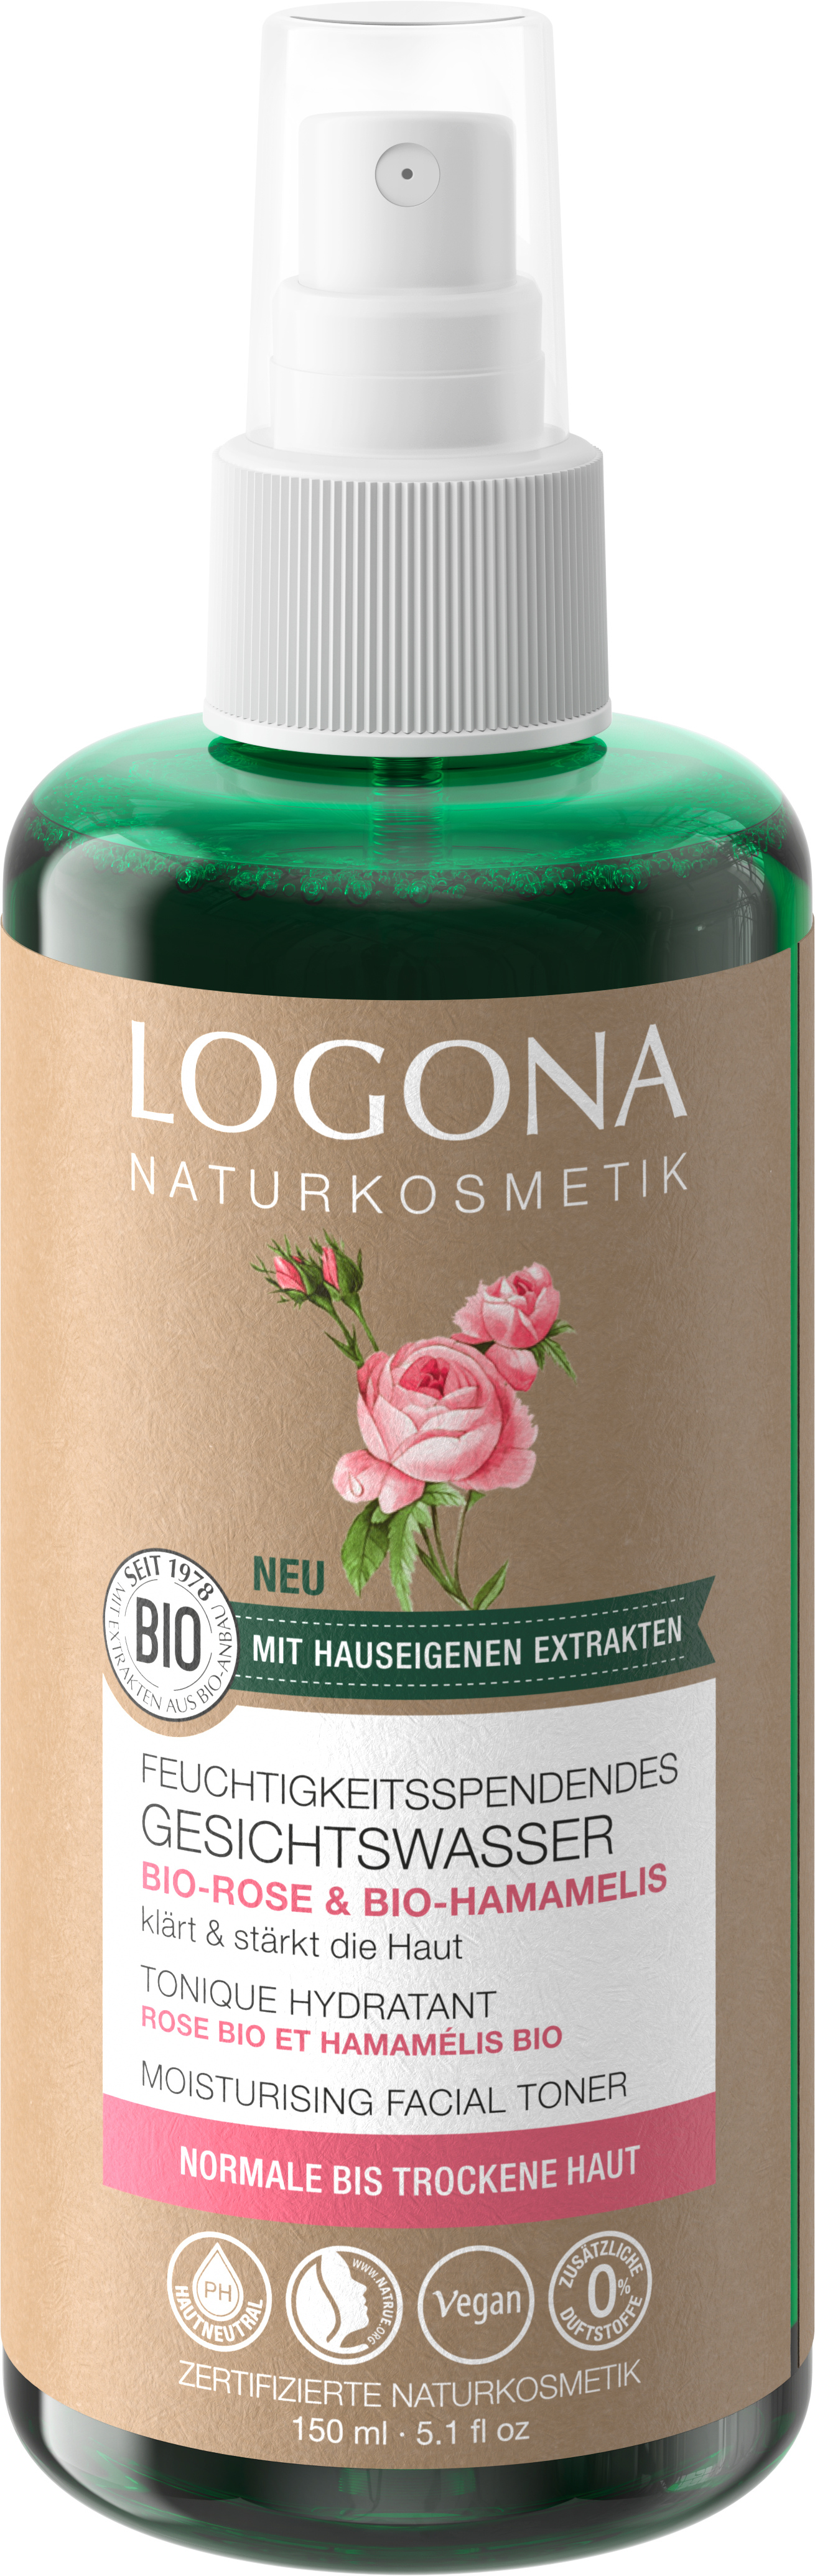 Feuchtigkeitsspendendes Gesichtswasser Bio-Rose & Bio-Hamamelis | LOGONA  Naturkosmetik